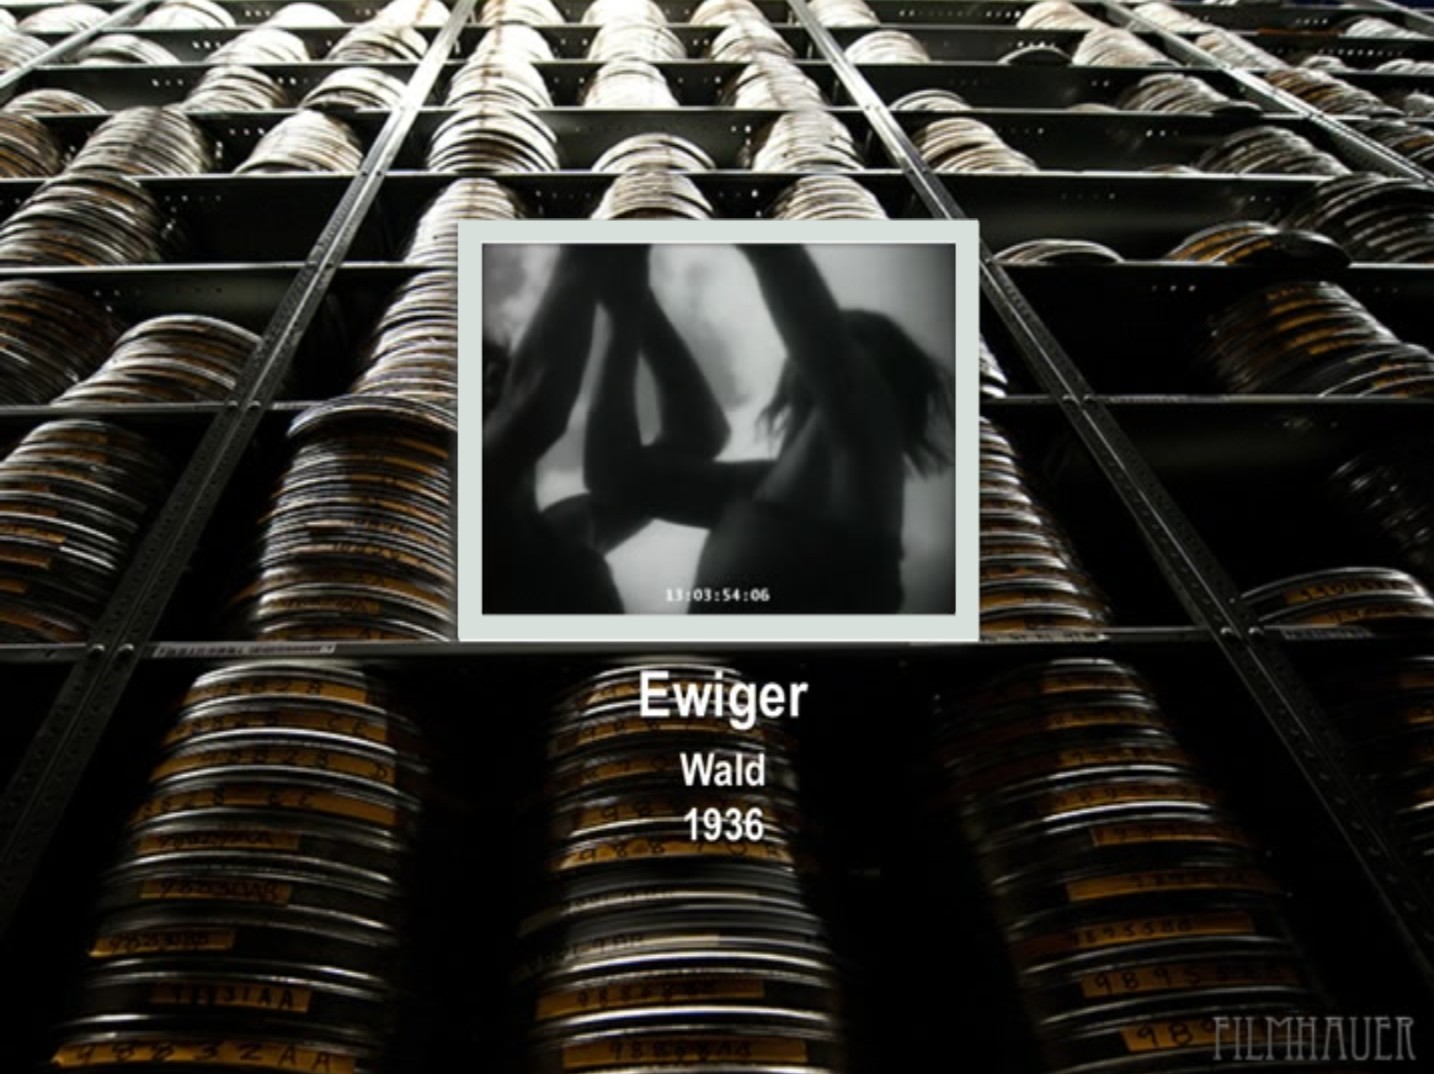 EWIGER WALD 1936